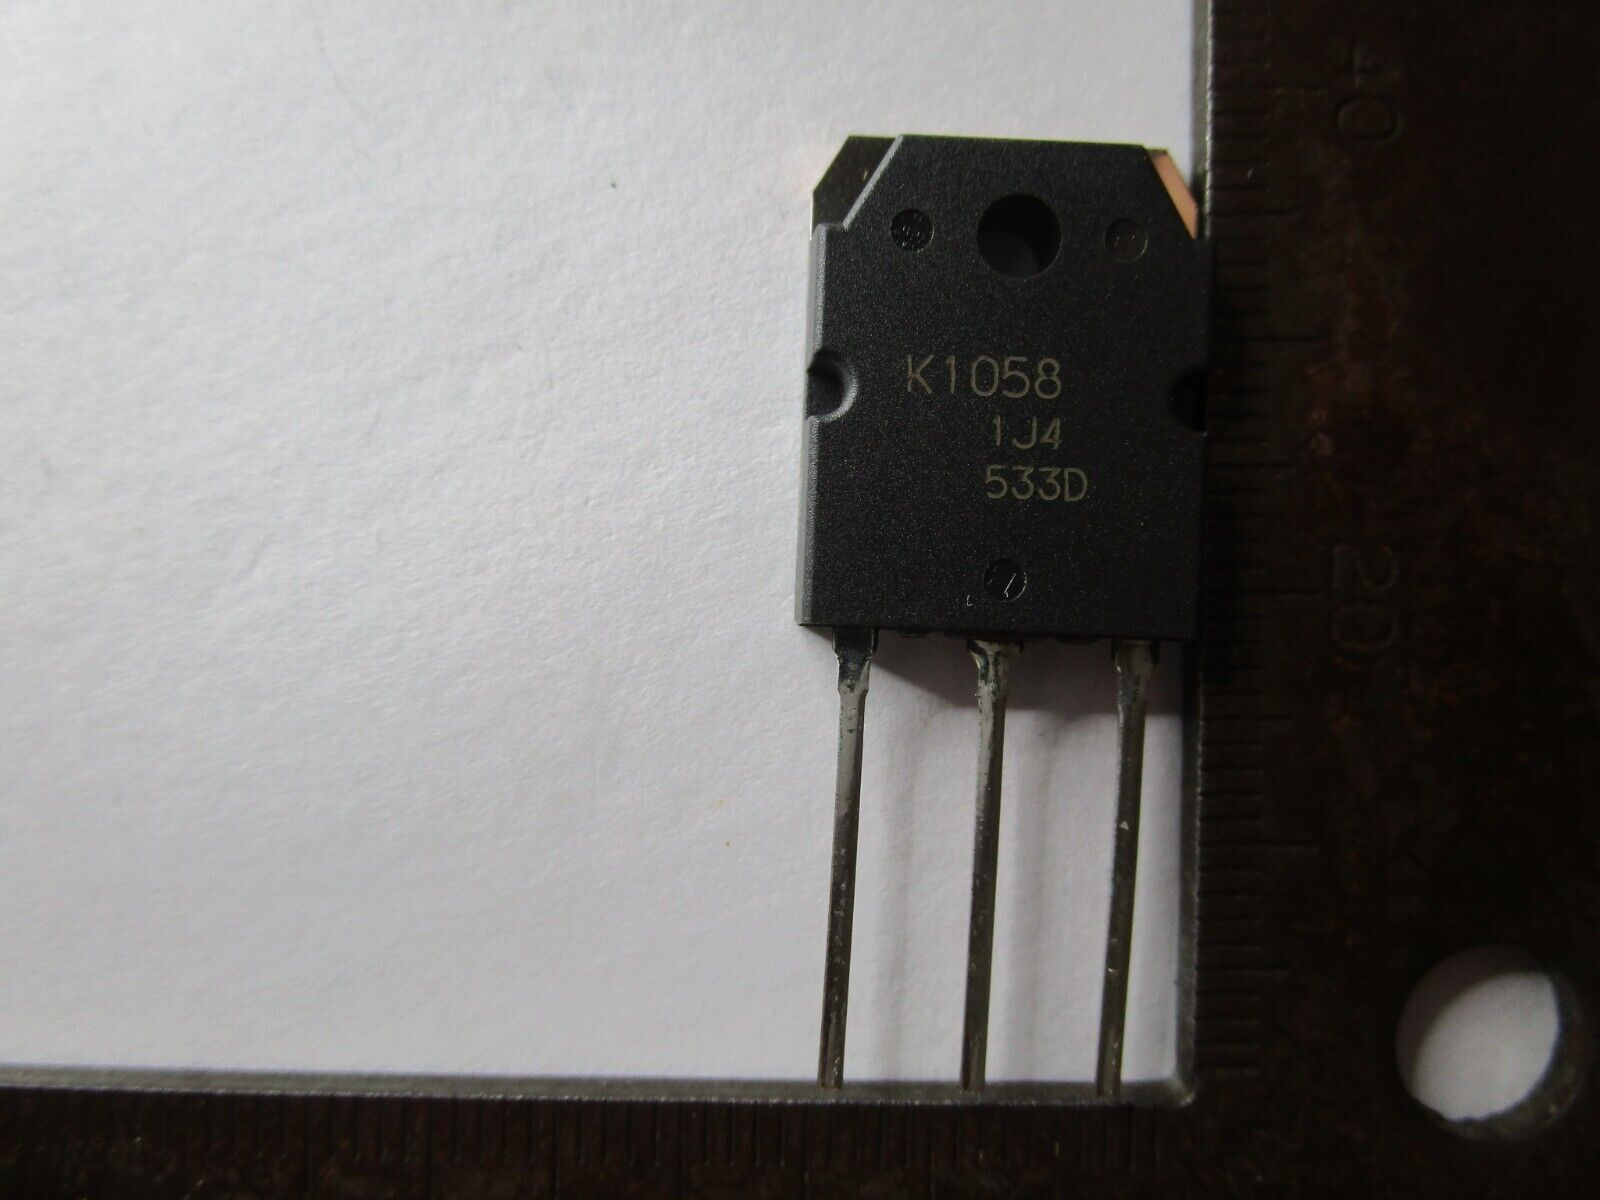 1 Piece KI058 K1O58 K10S8 K105B K1058 2SK1058 TO3P Transistor